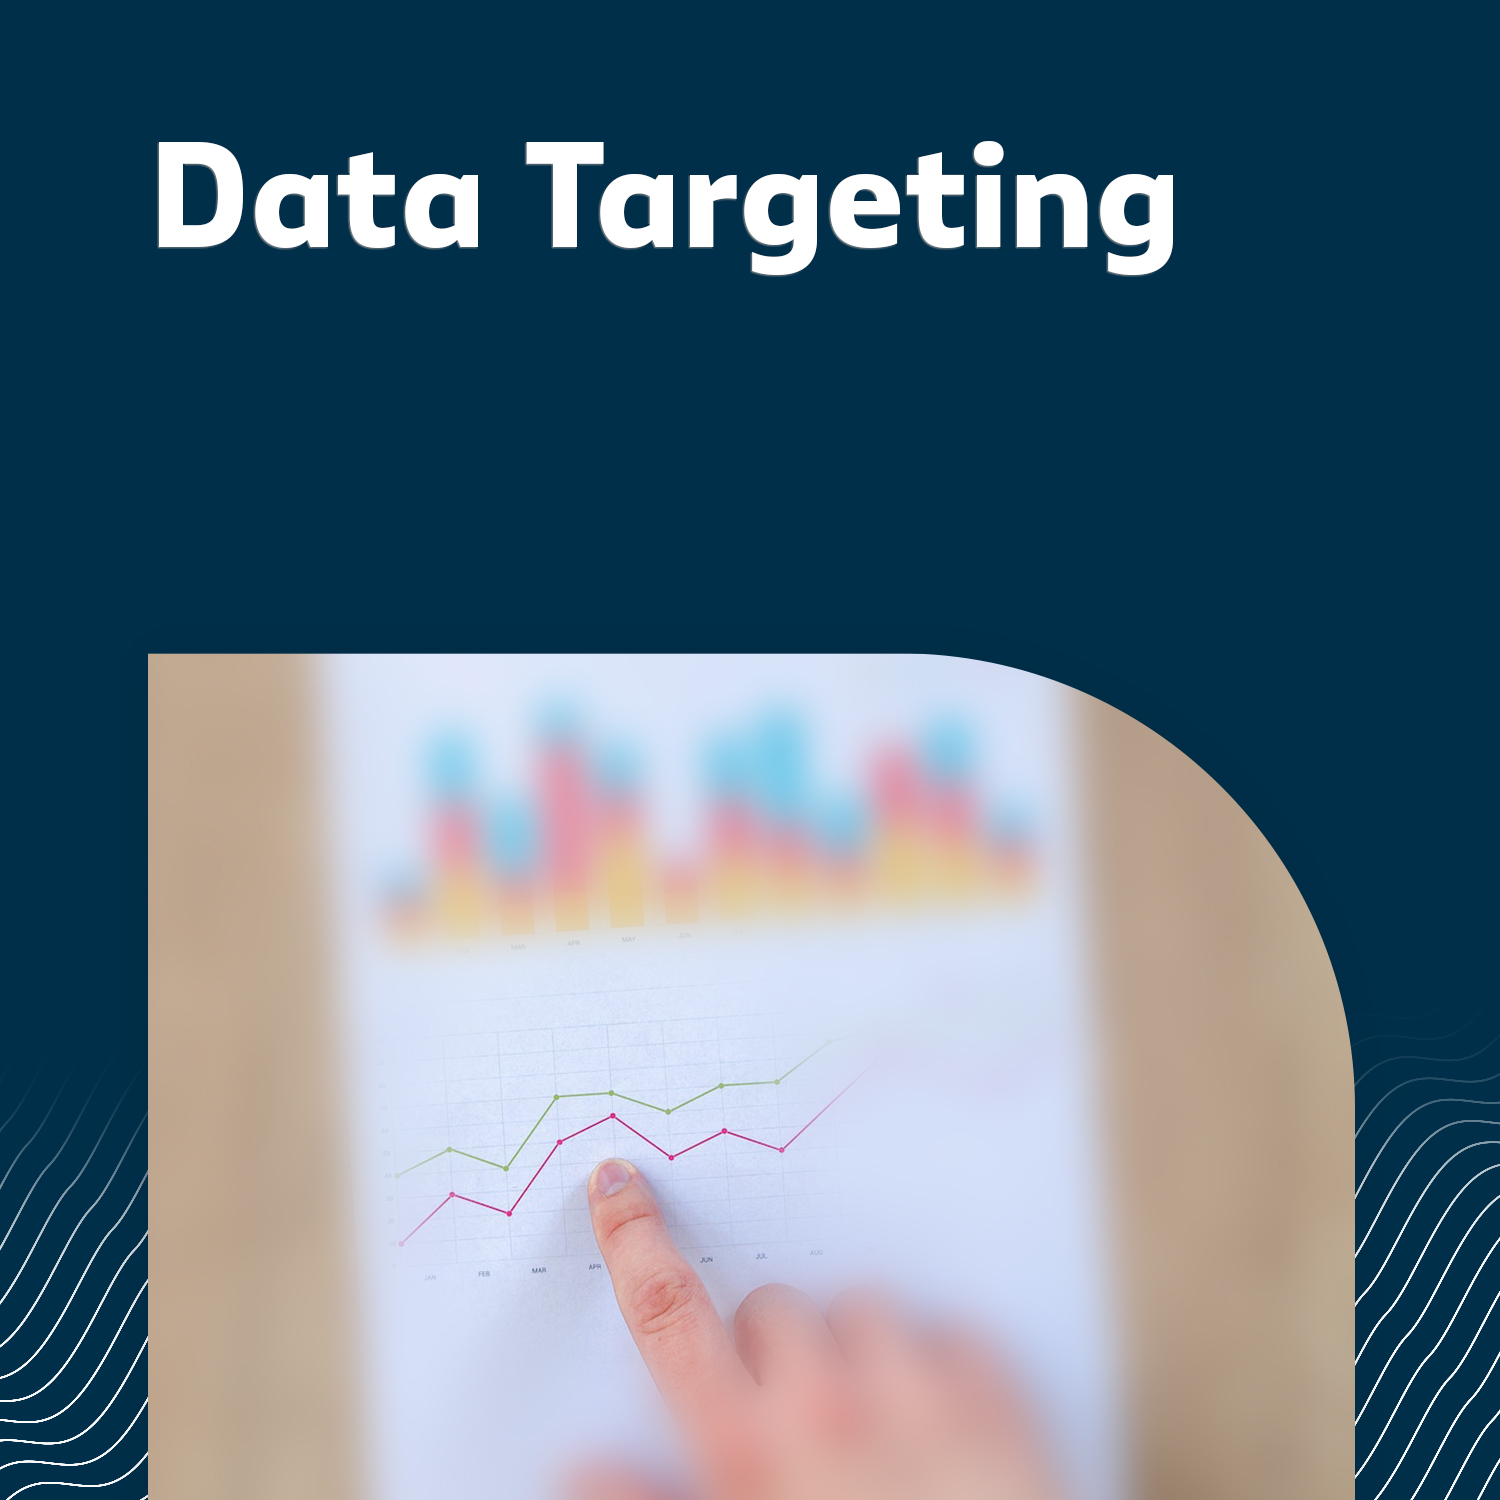 Data Targeting